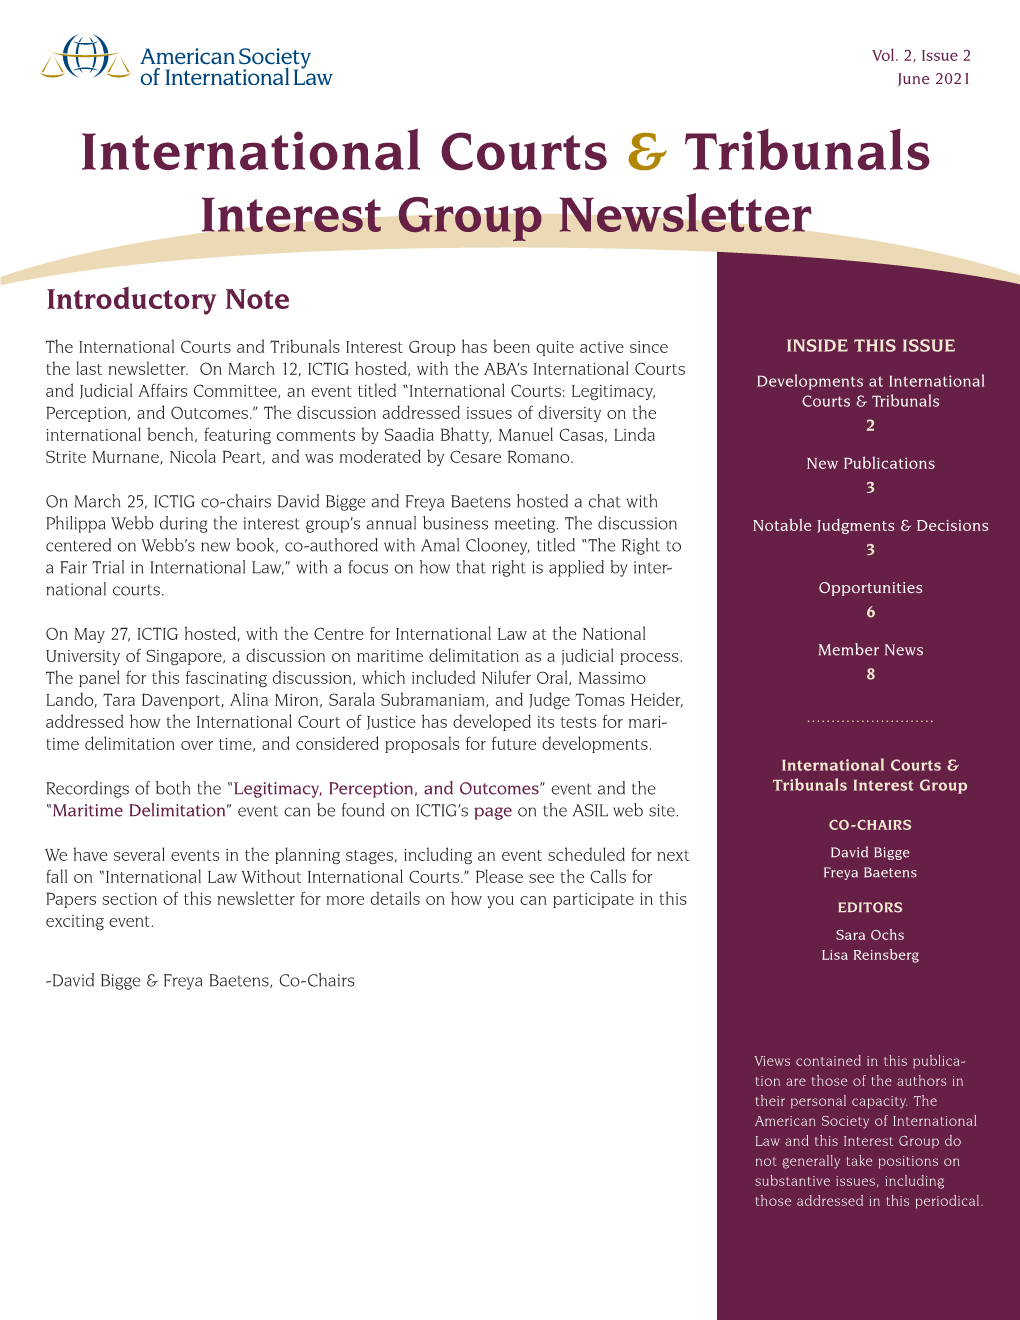 ICTIG June 2021 Newsletter